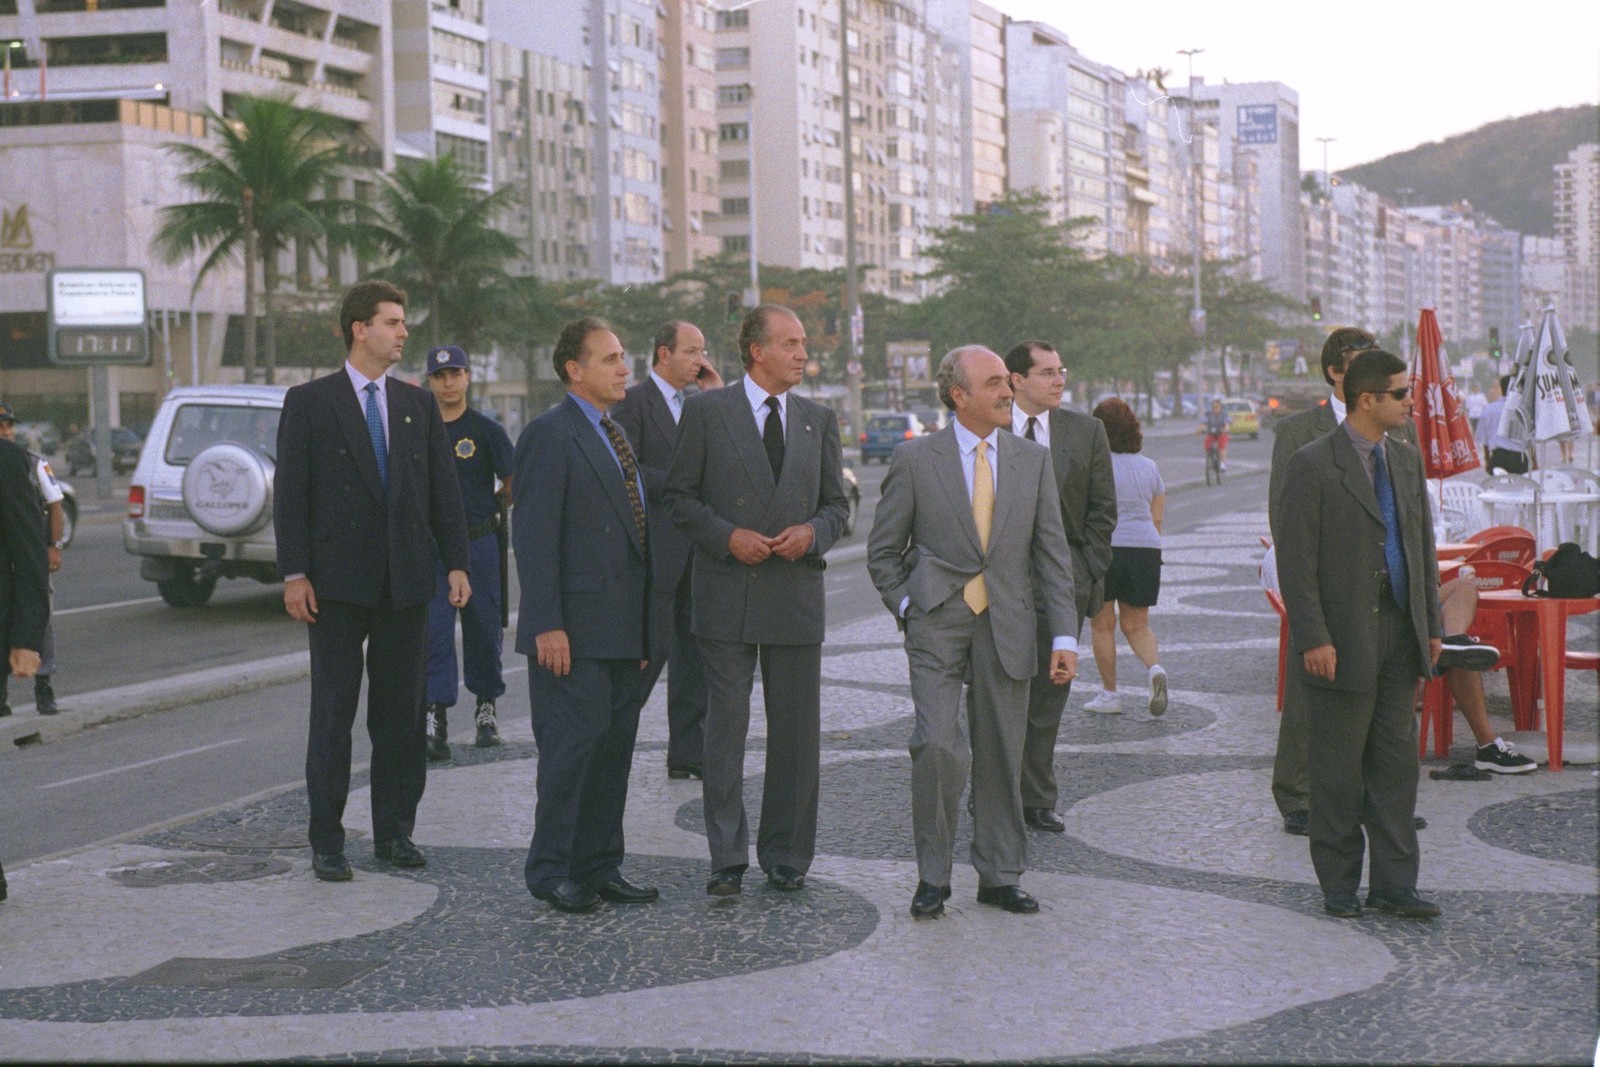 O rei da Espanha Juan Carlos passeia pelas ruas e calçadão de Copacabana — Foto: Gabriel de Paiva / Agência O Globo